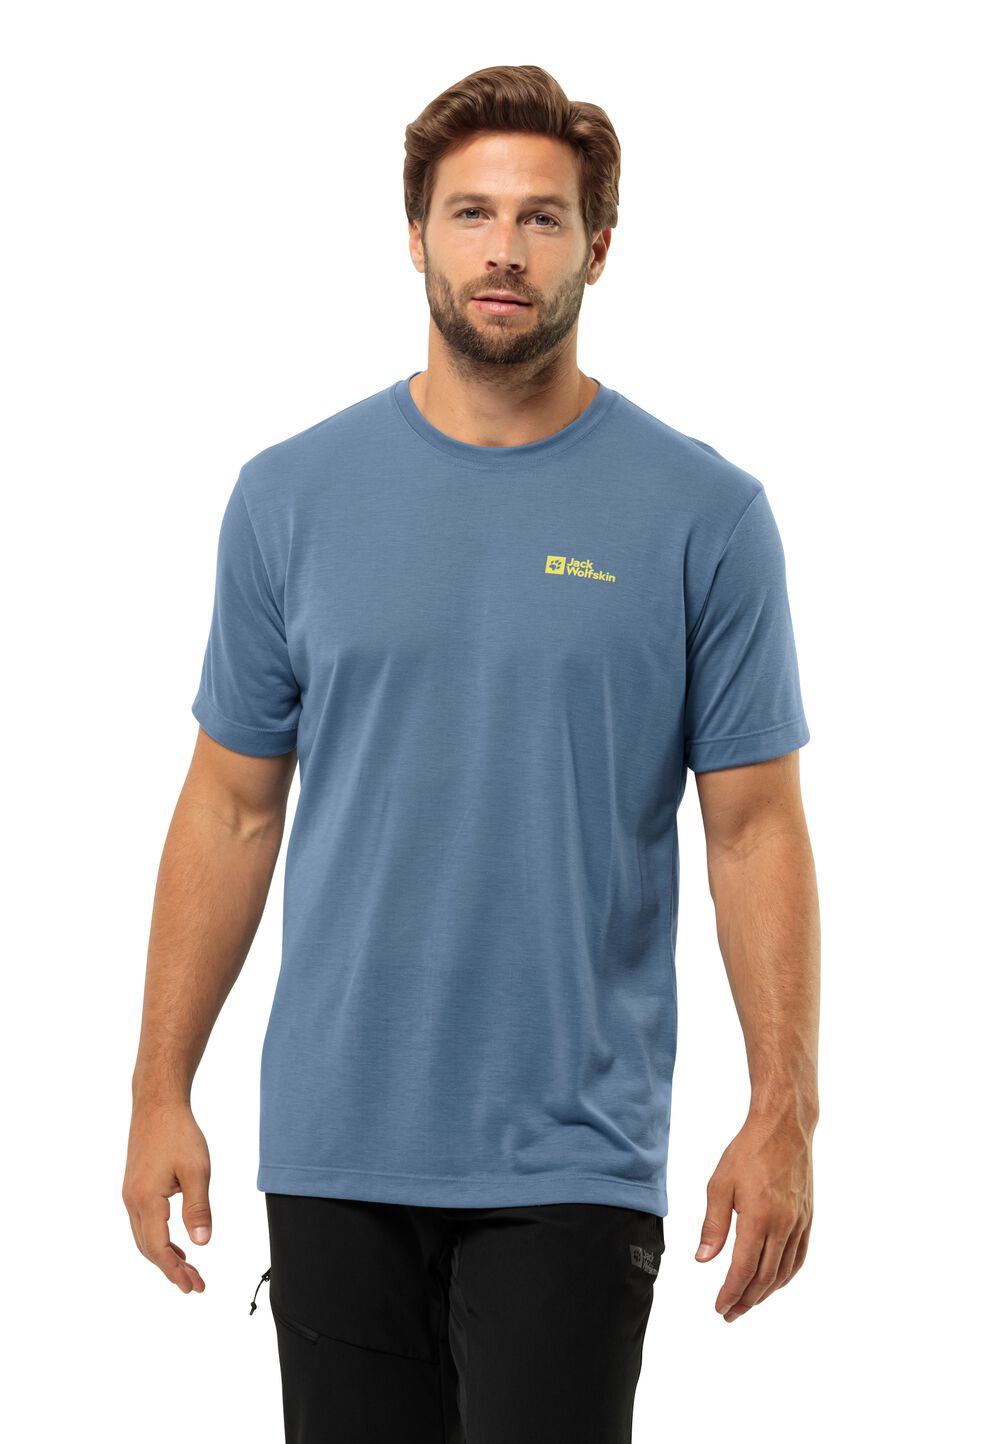 Jack Wolfskin Vonnan S S T-Shirt Men Functioneel shirt Heren 3XL elemental blue elemental blue